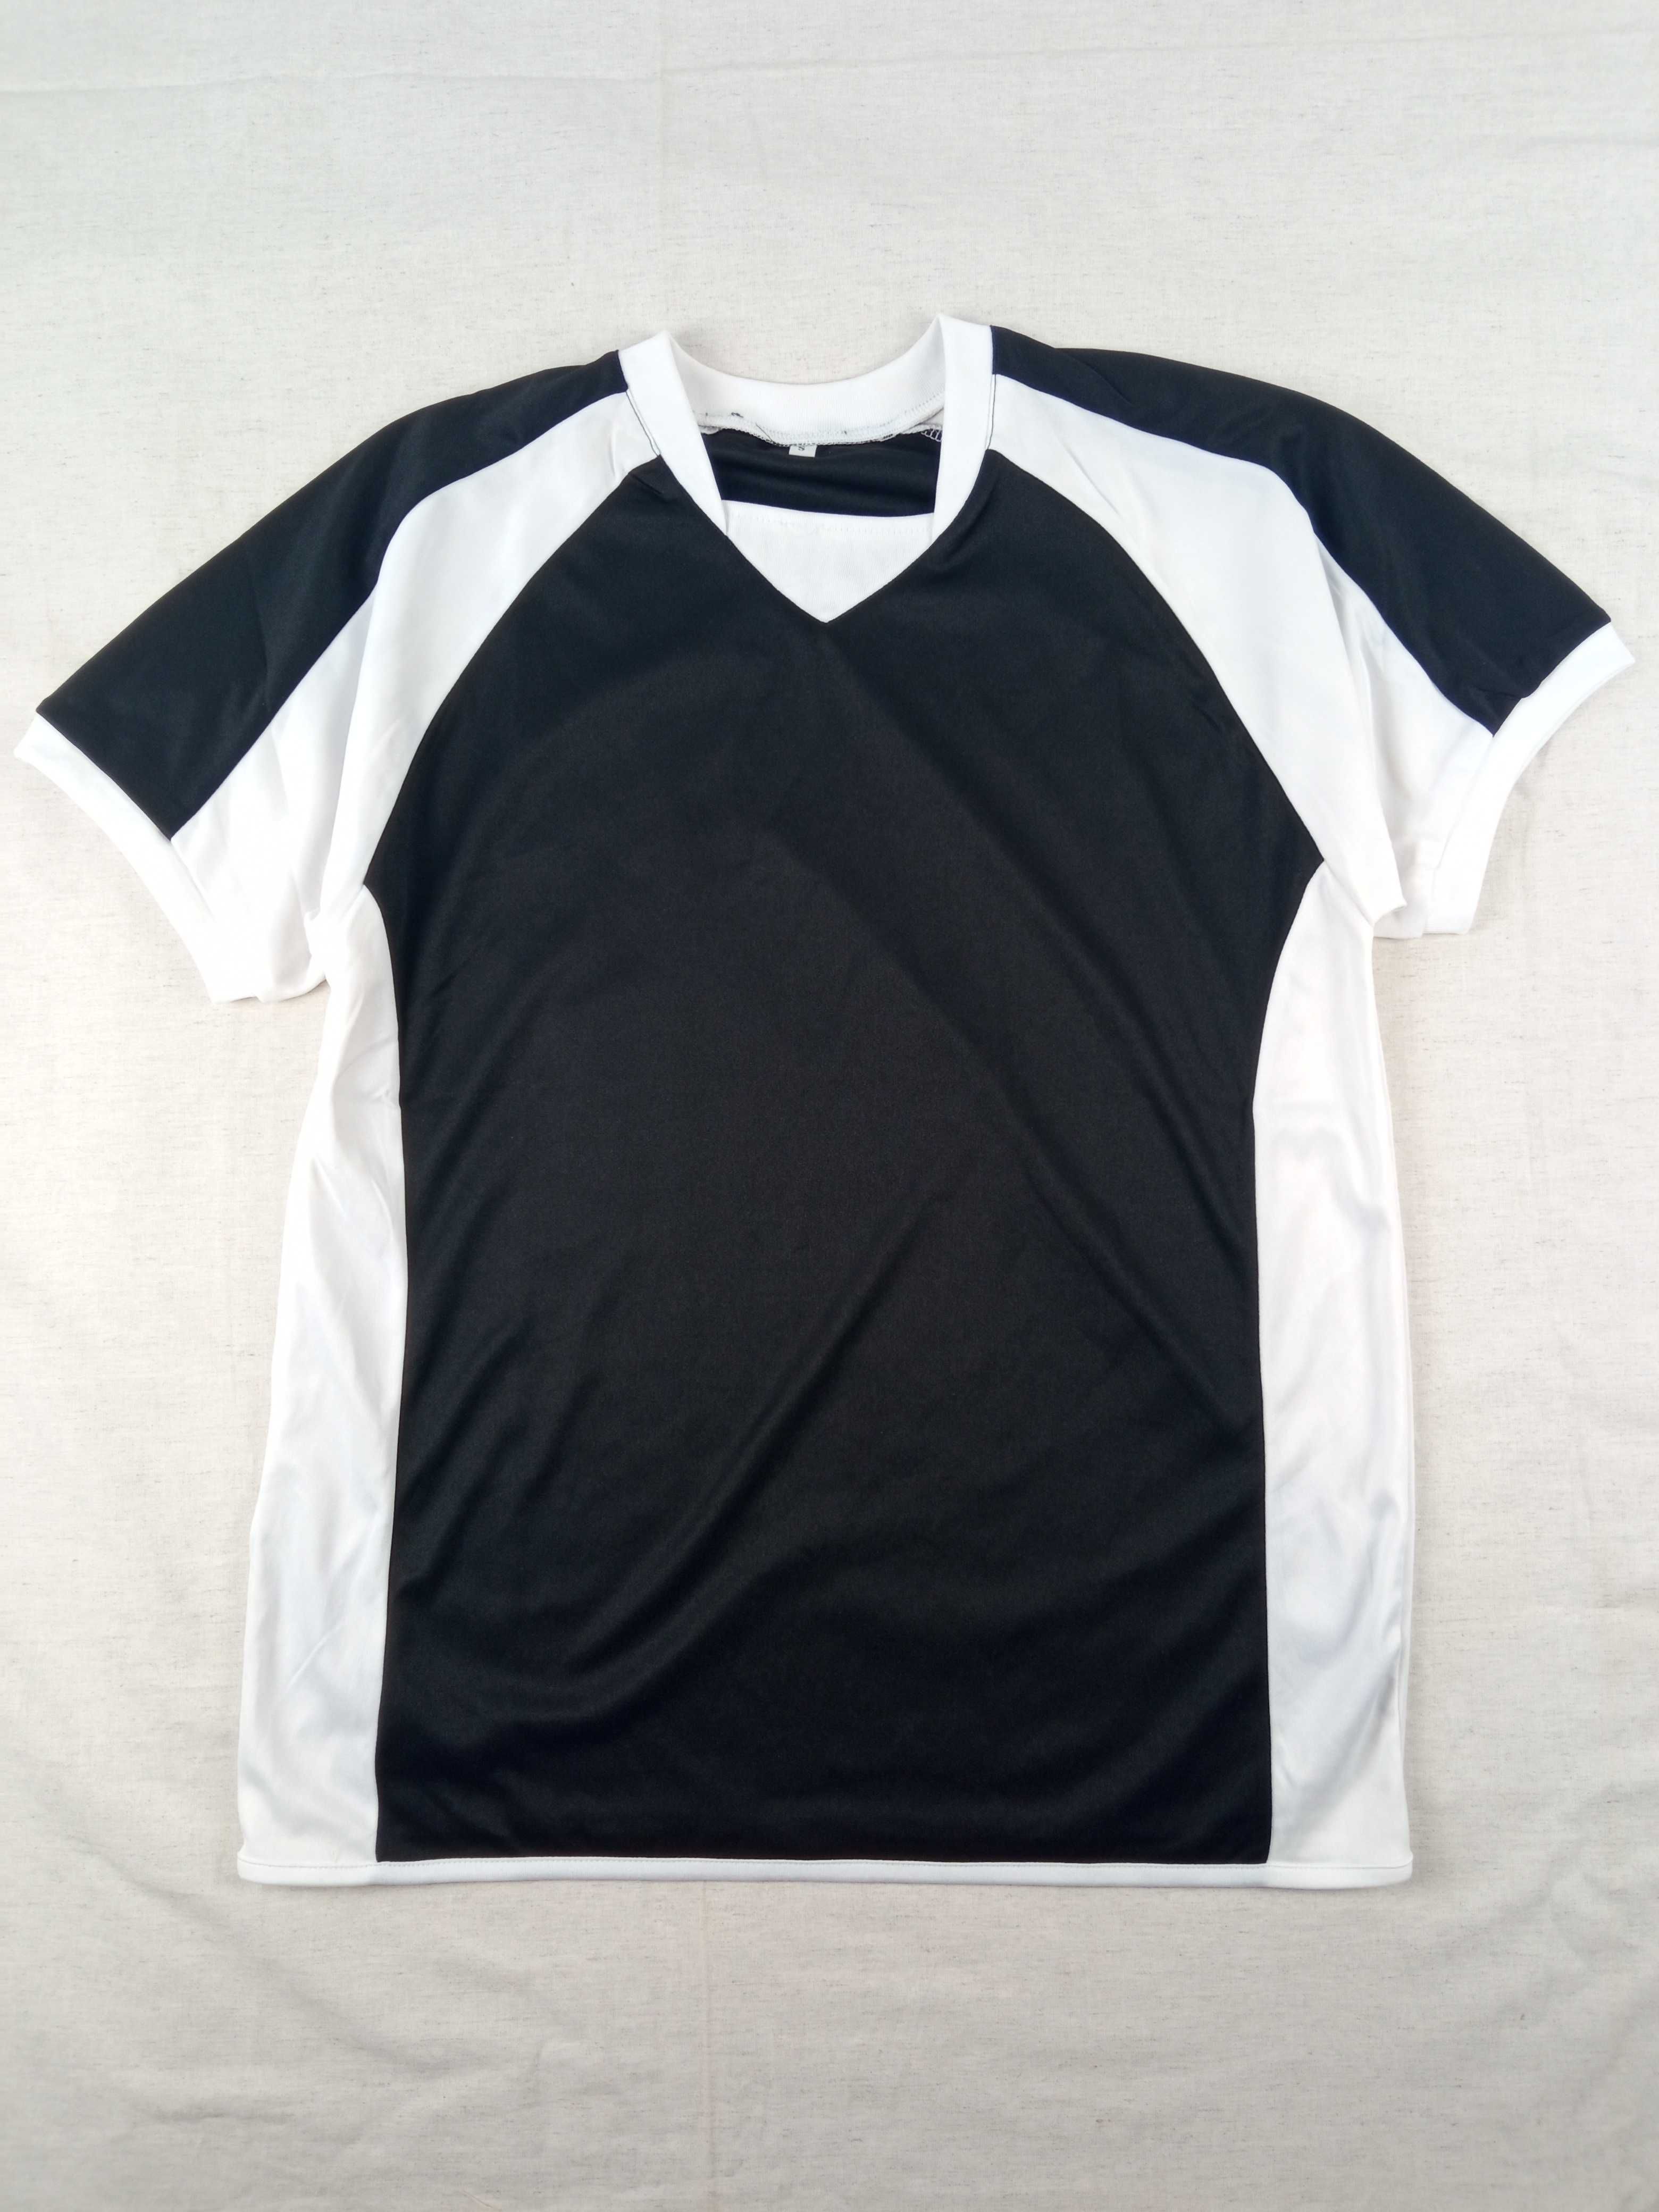 Czarny biały t-shirt męska koszulka bluzka sportowa S